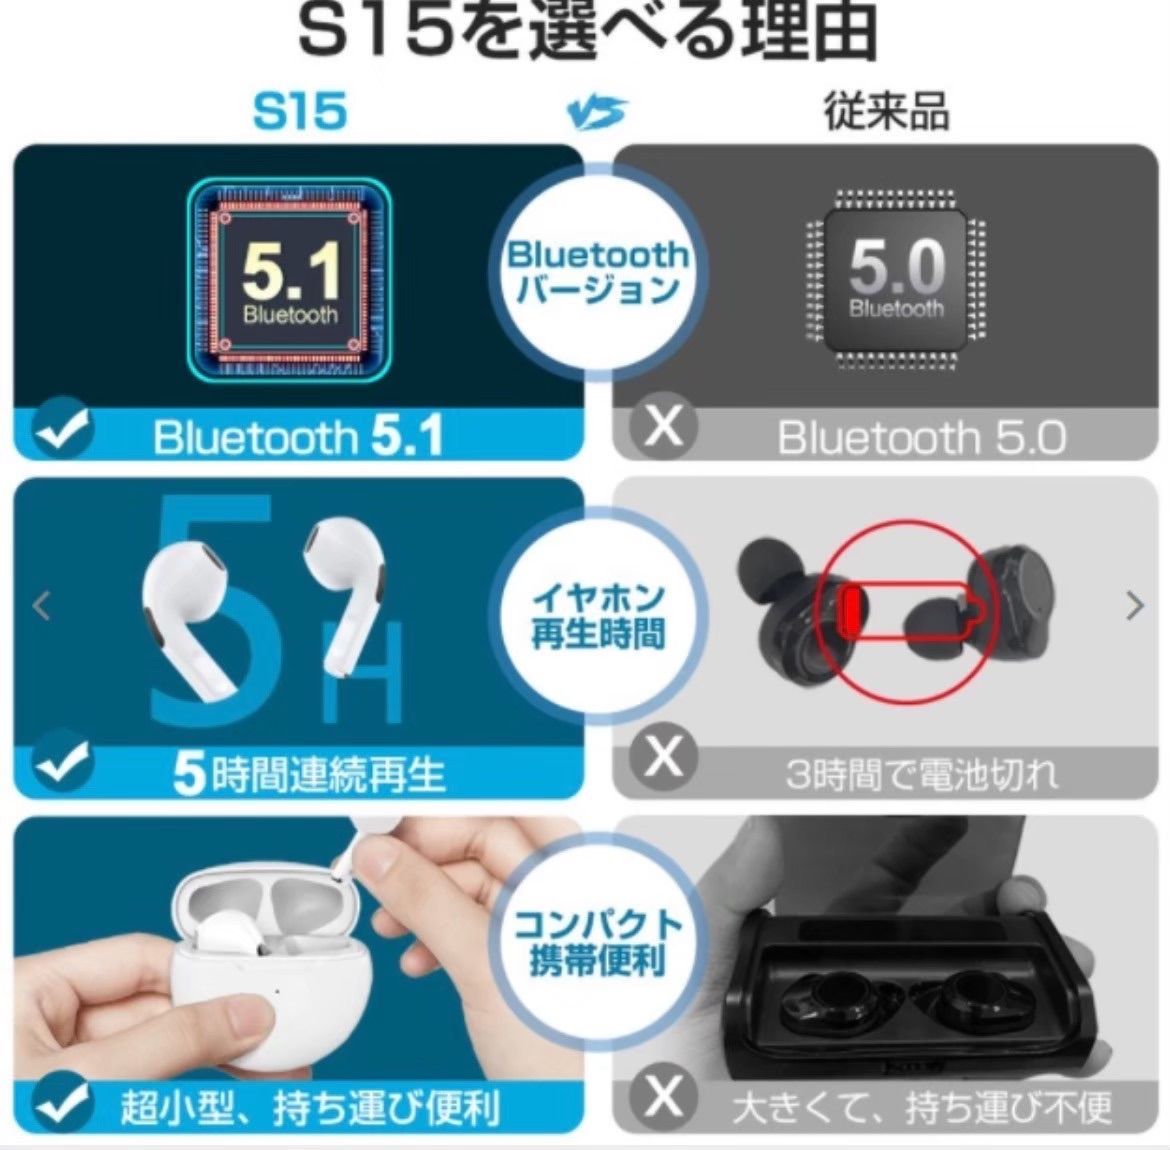 【最新モデル】AirPro9 Bluetoothワイヤレスイヤホン　箱つき